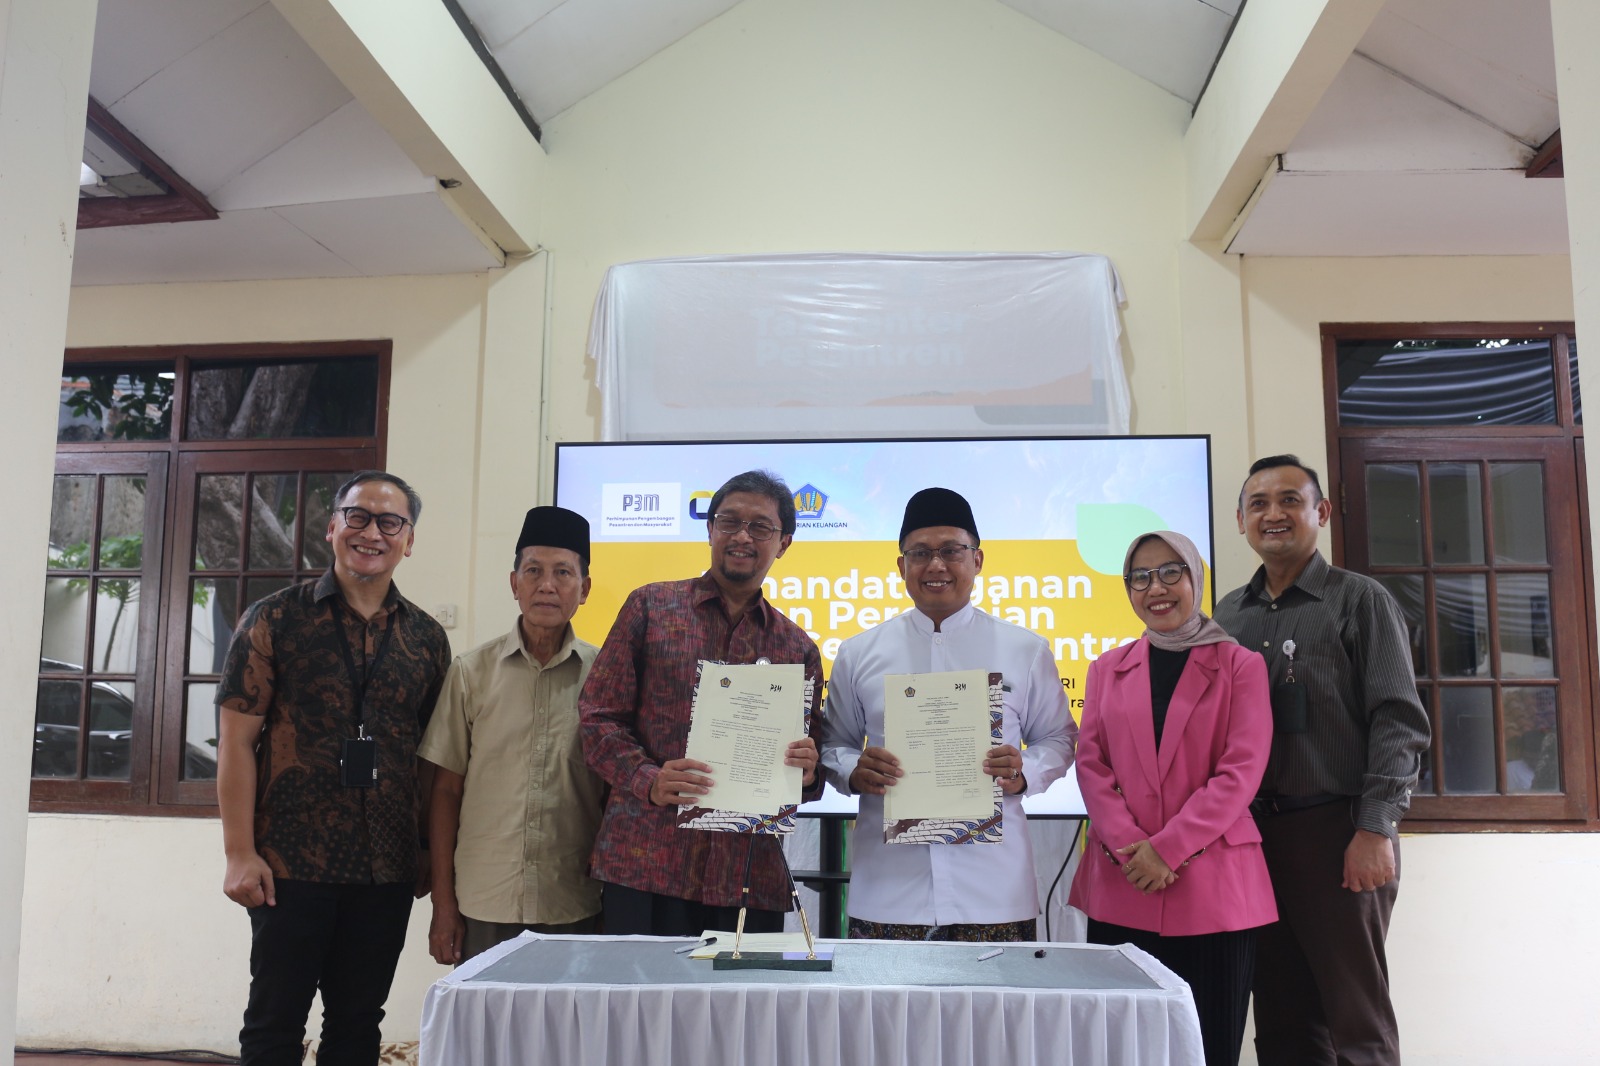 Bekerjasama dengan Kantor Wilayah (Kanwil) Direktorat Direktorat Jenderal Pajak (DJP) Jakarta Timur, P3M mendirikan Tax Center Pesantren. Salah satu tujuannya adalah untuk memperkuat literasi pajak di pesantren.